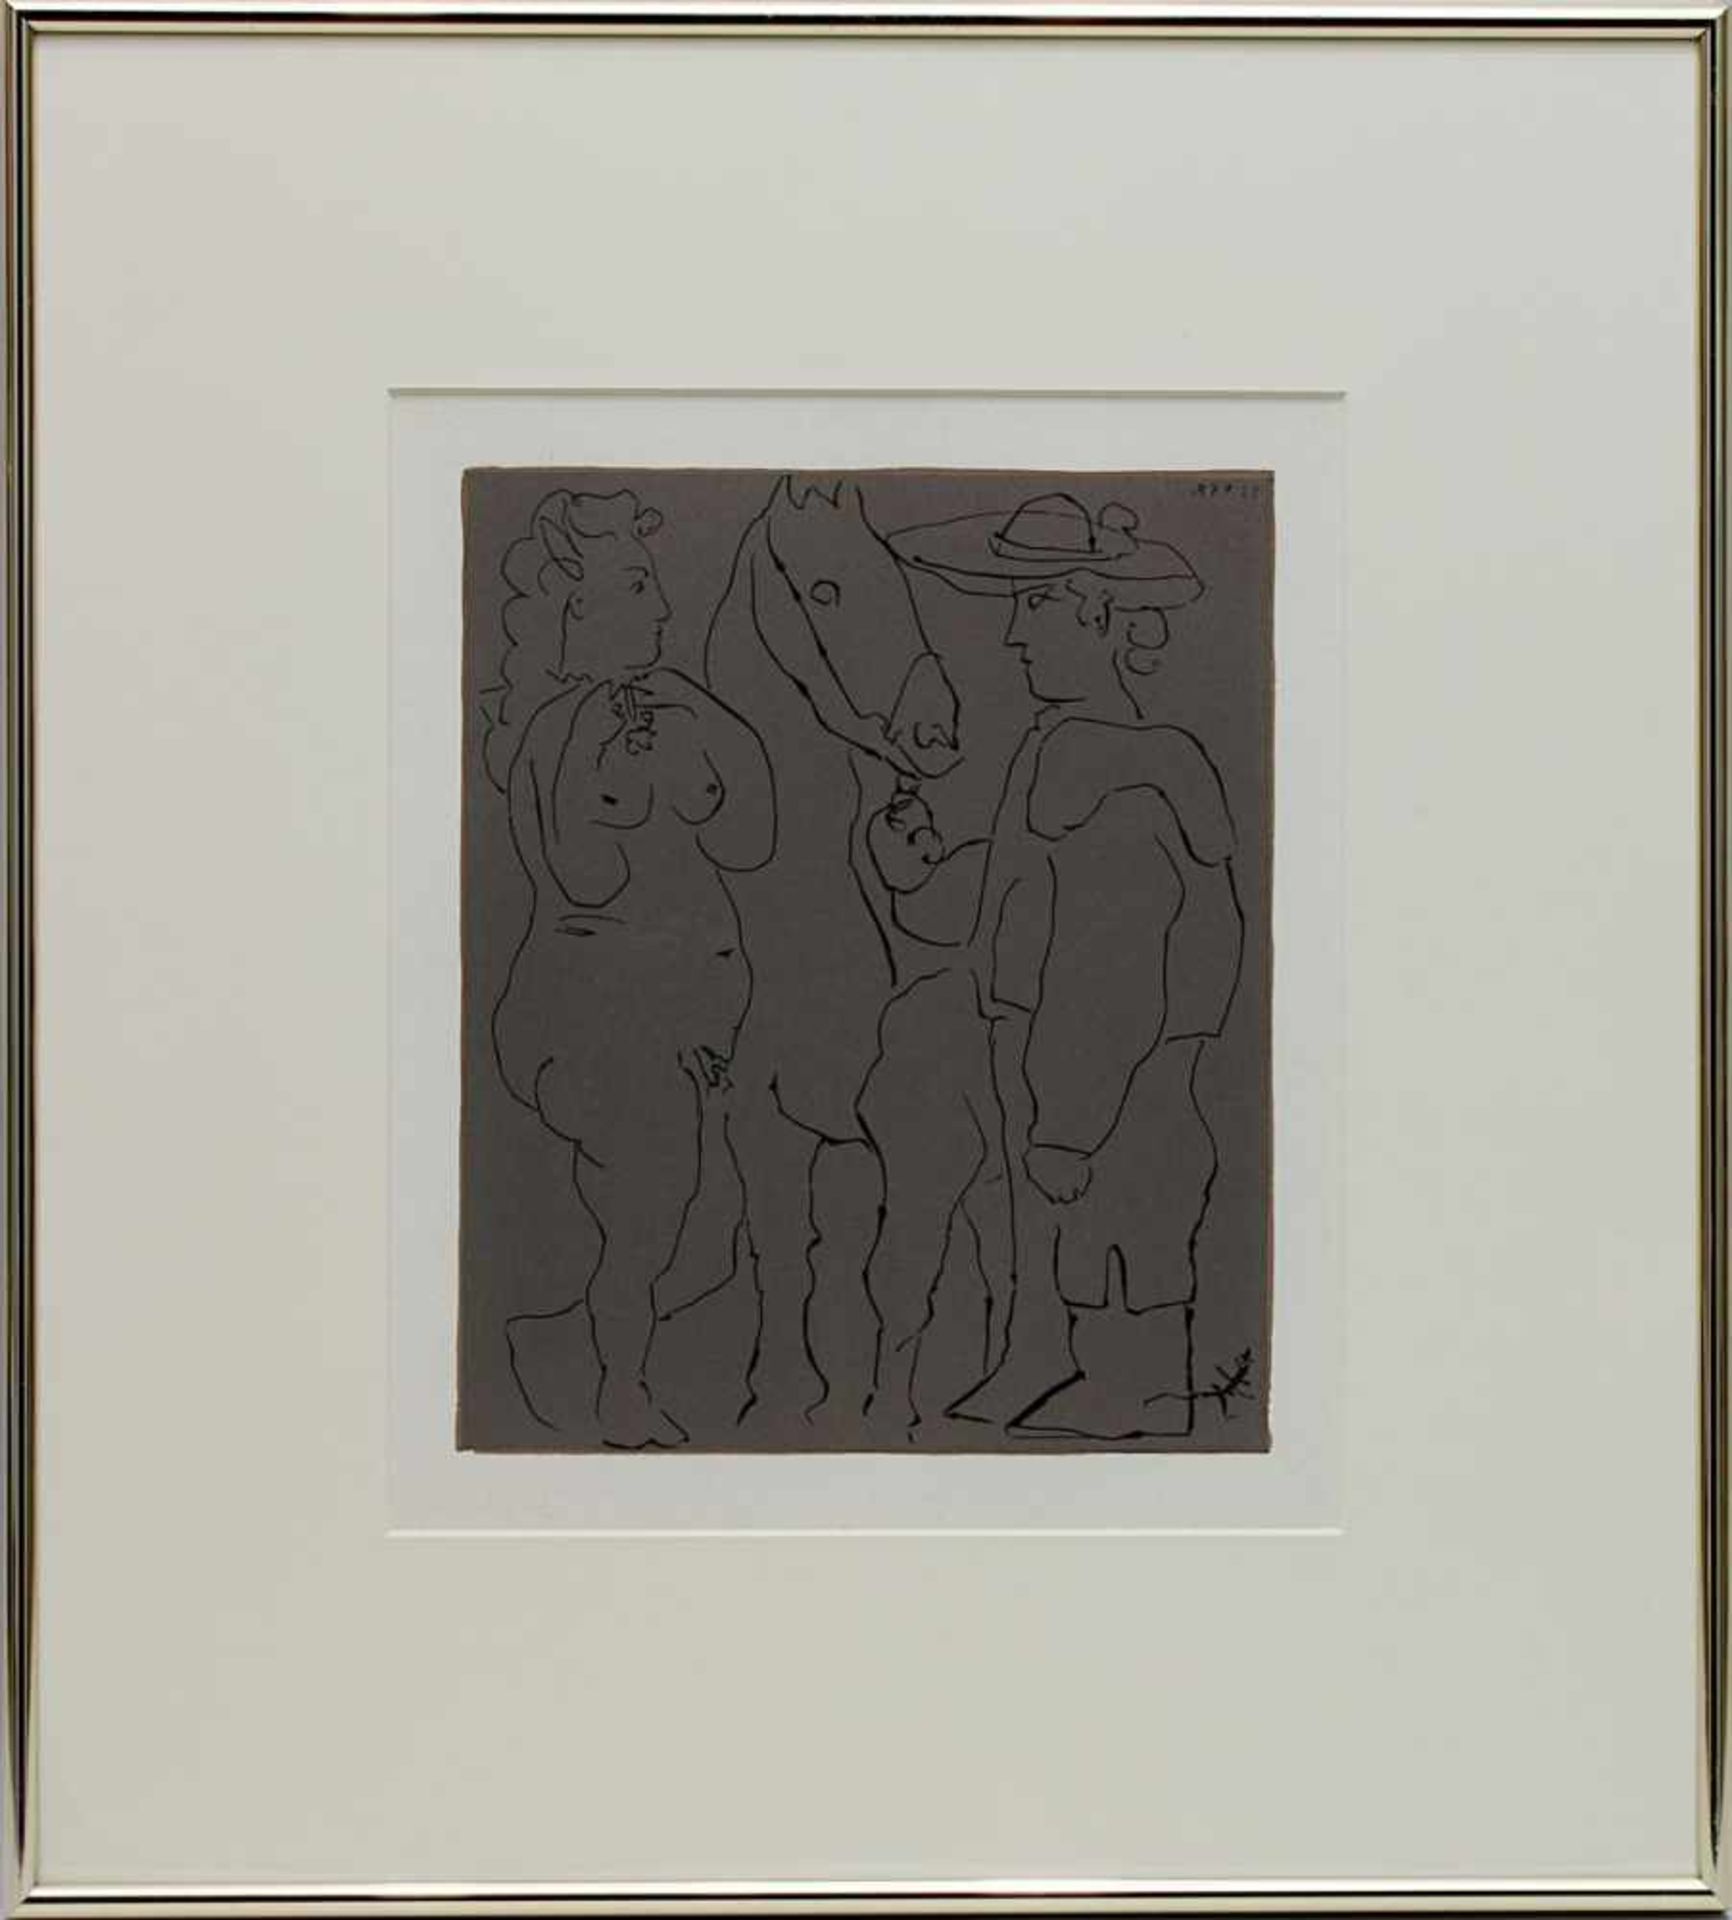 Picasso, Pablo (1881 Málaga - 1973 Mougins), Matador und weiblicher Akt, Linolschnitt, Paris 1961